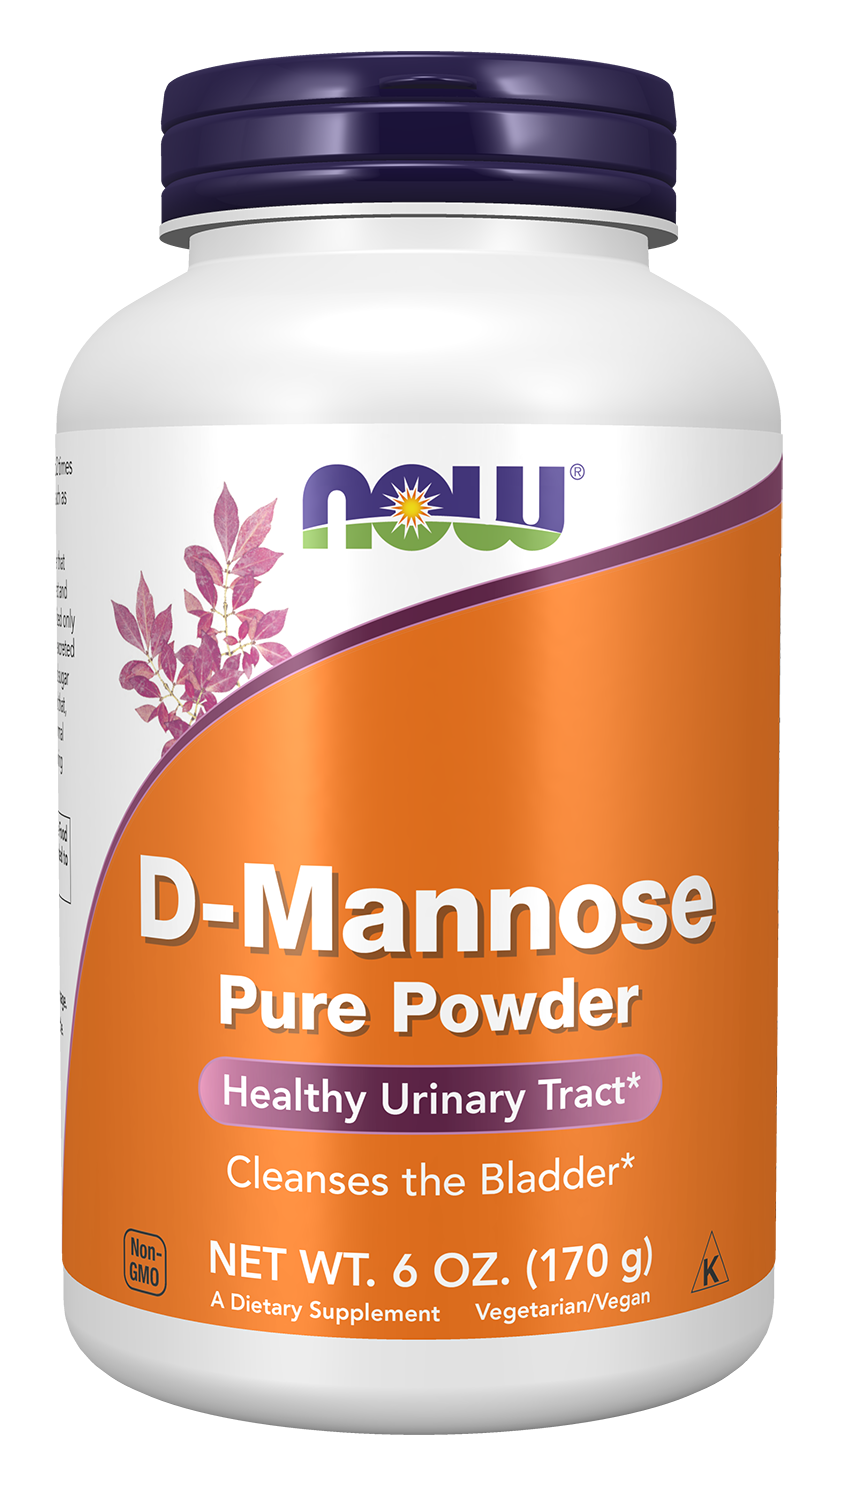 D-Mannose, Organic & Pure - 6 oz. Powder Bottle Front